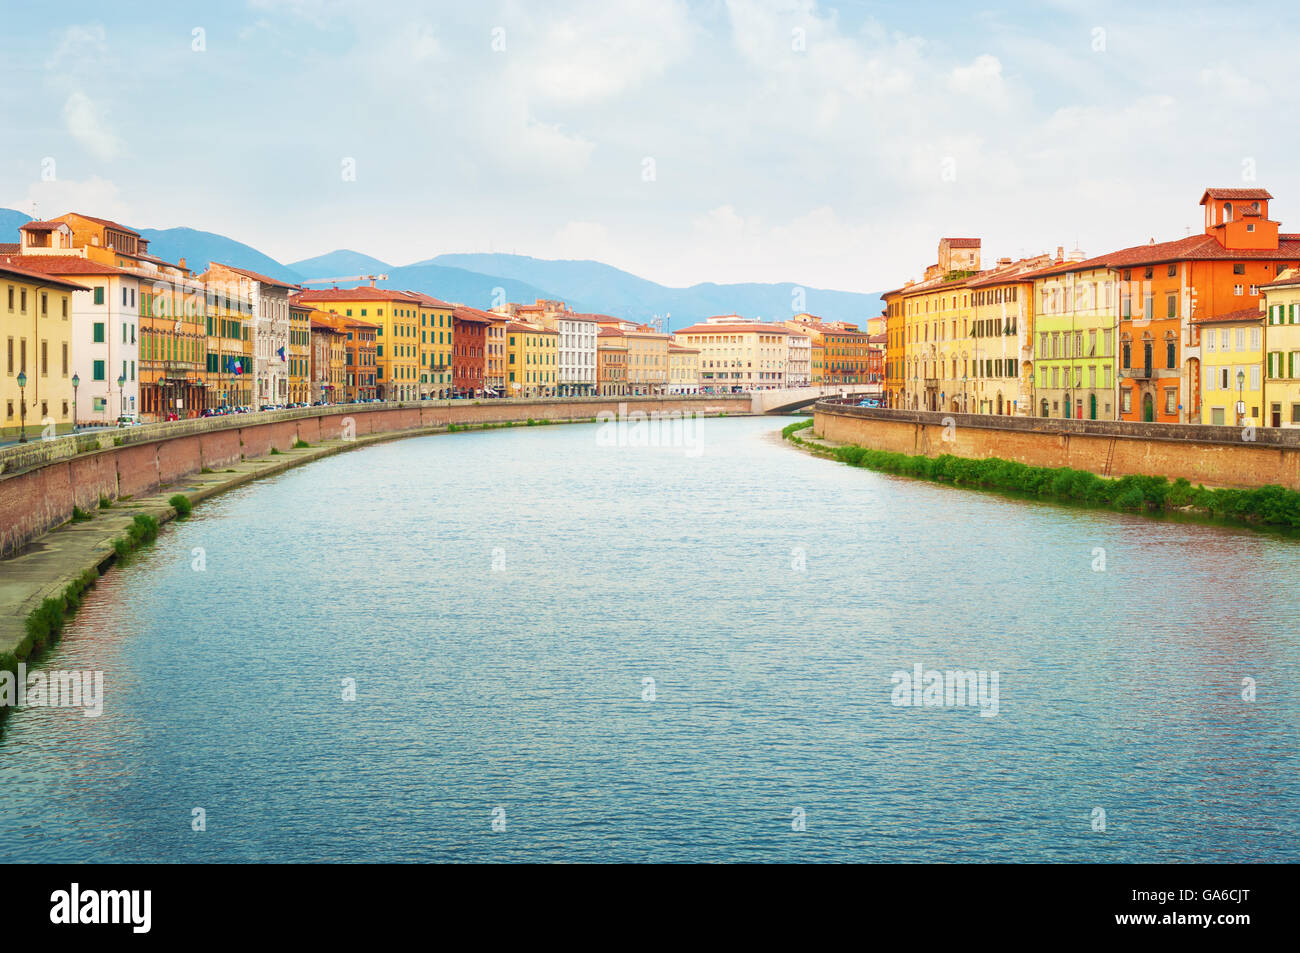 River Arno in Pisa, Italy. Stock Photo